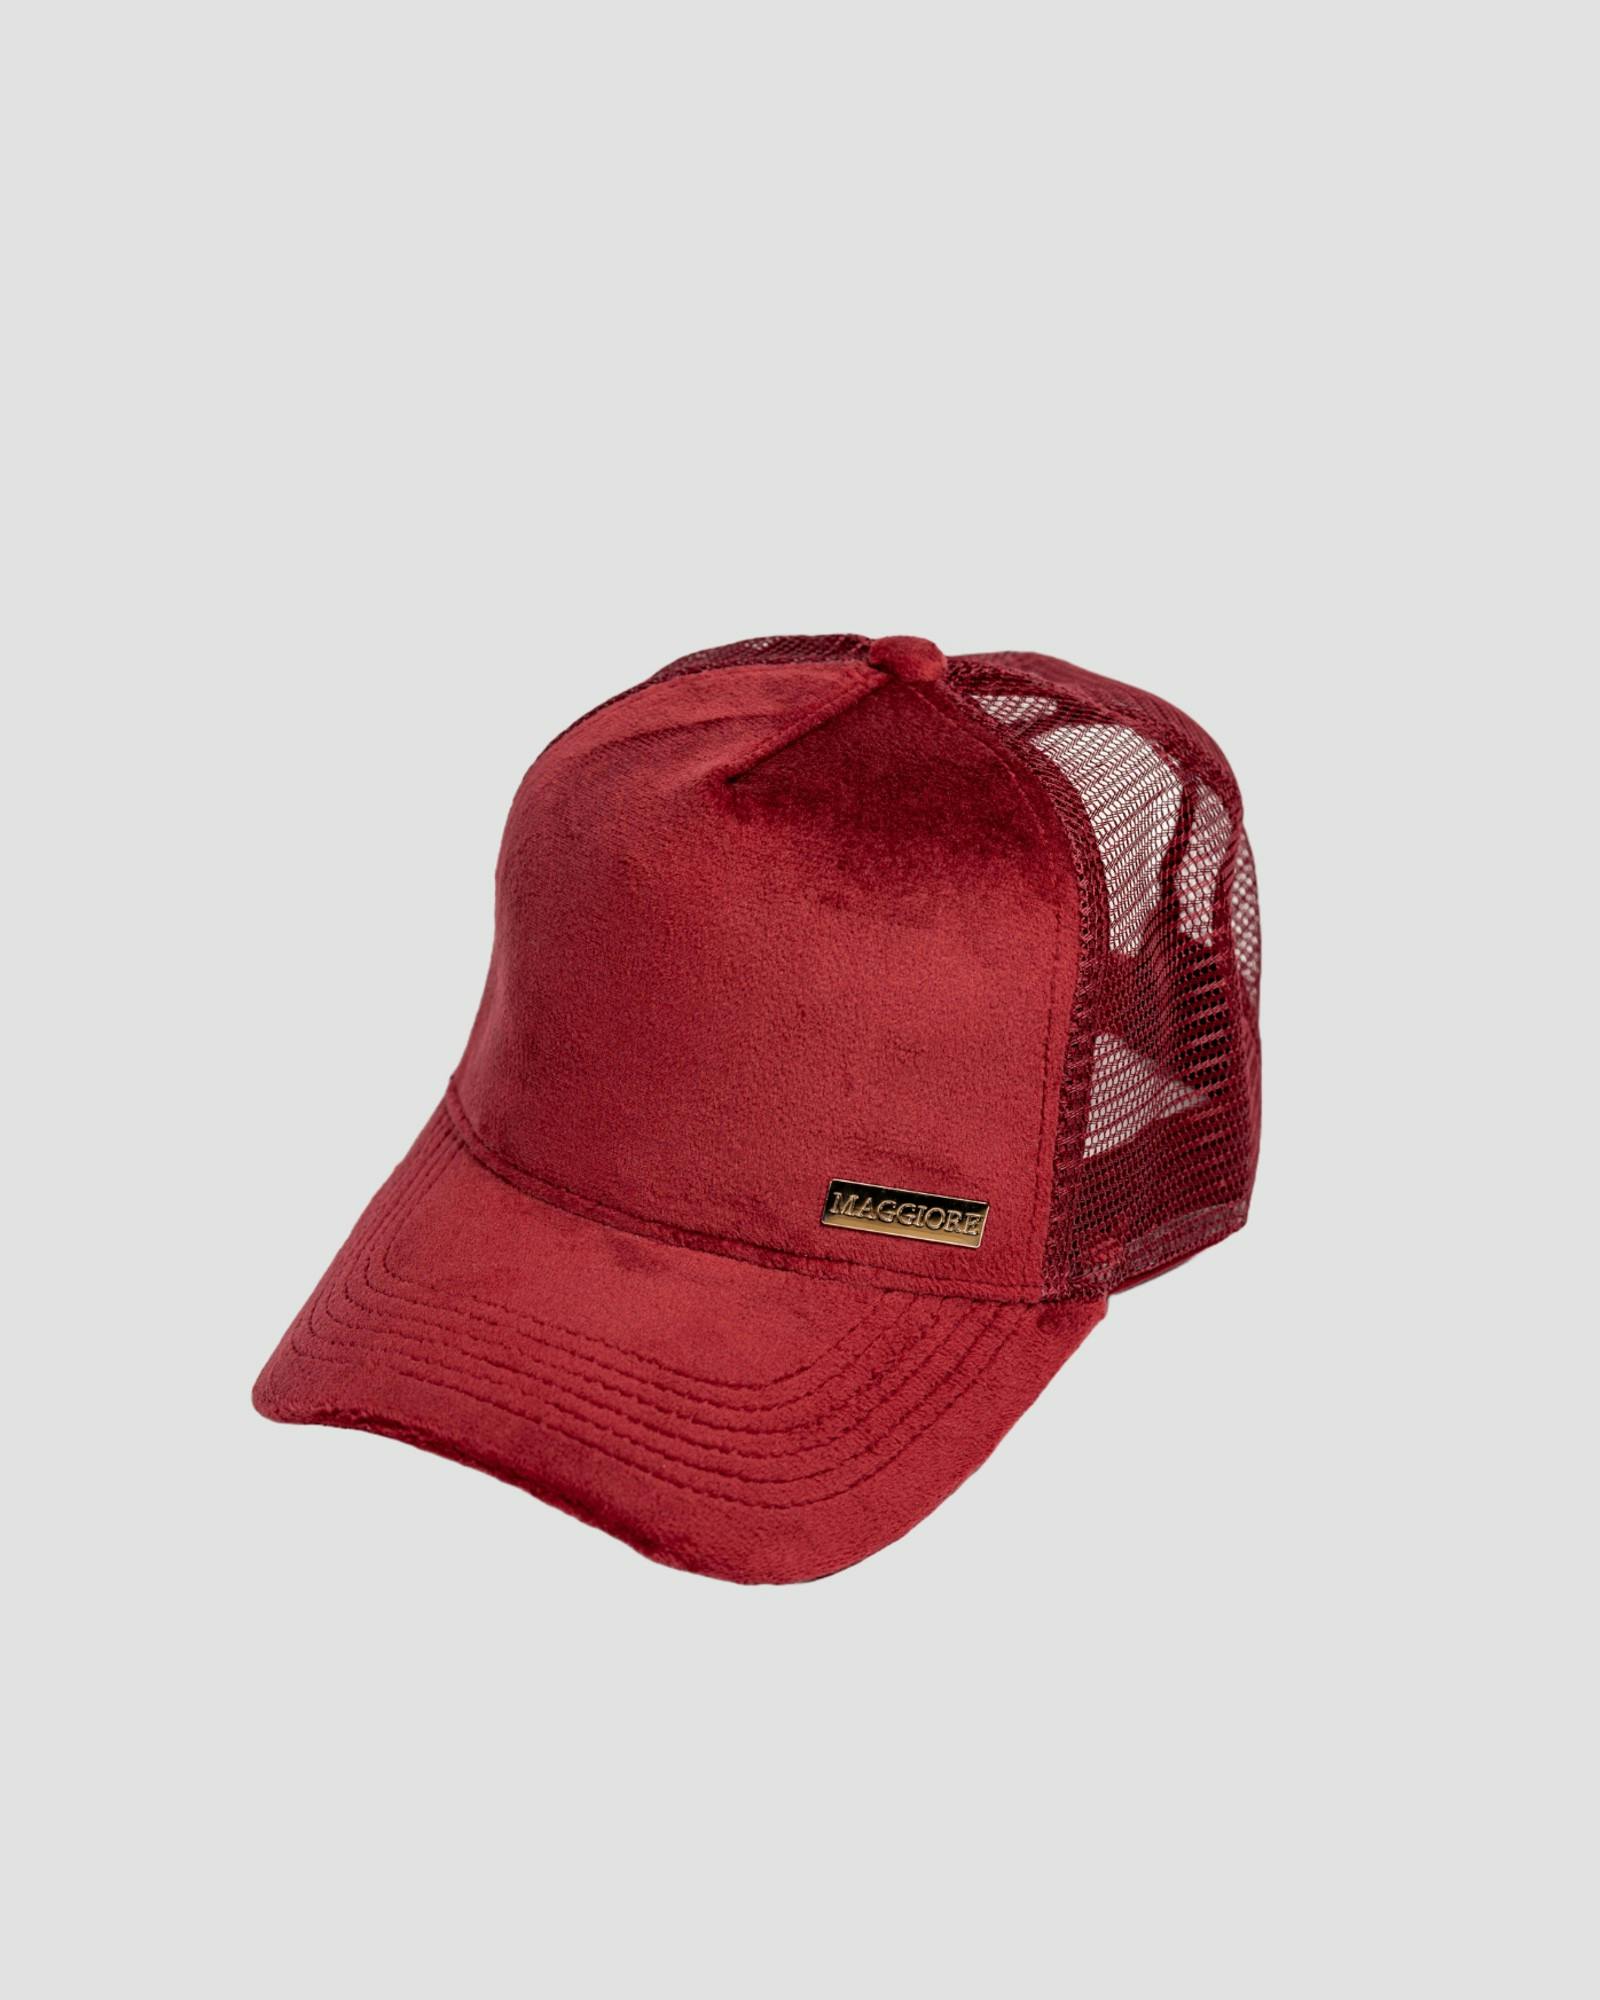 MAGGIORE Unlimited Red Cap